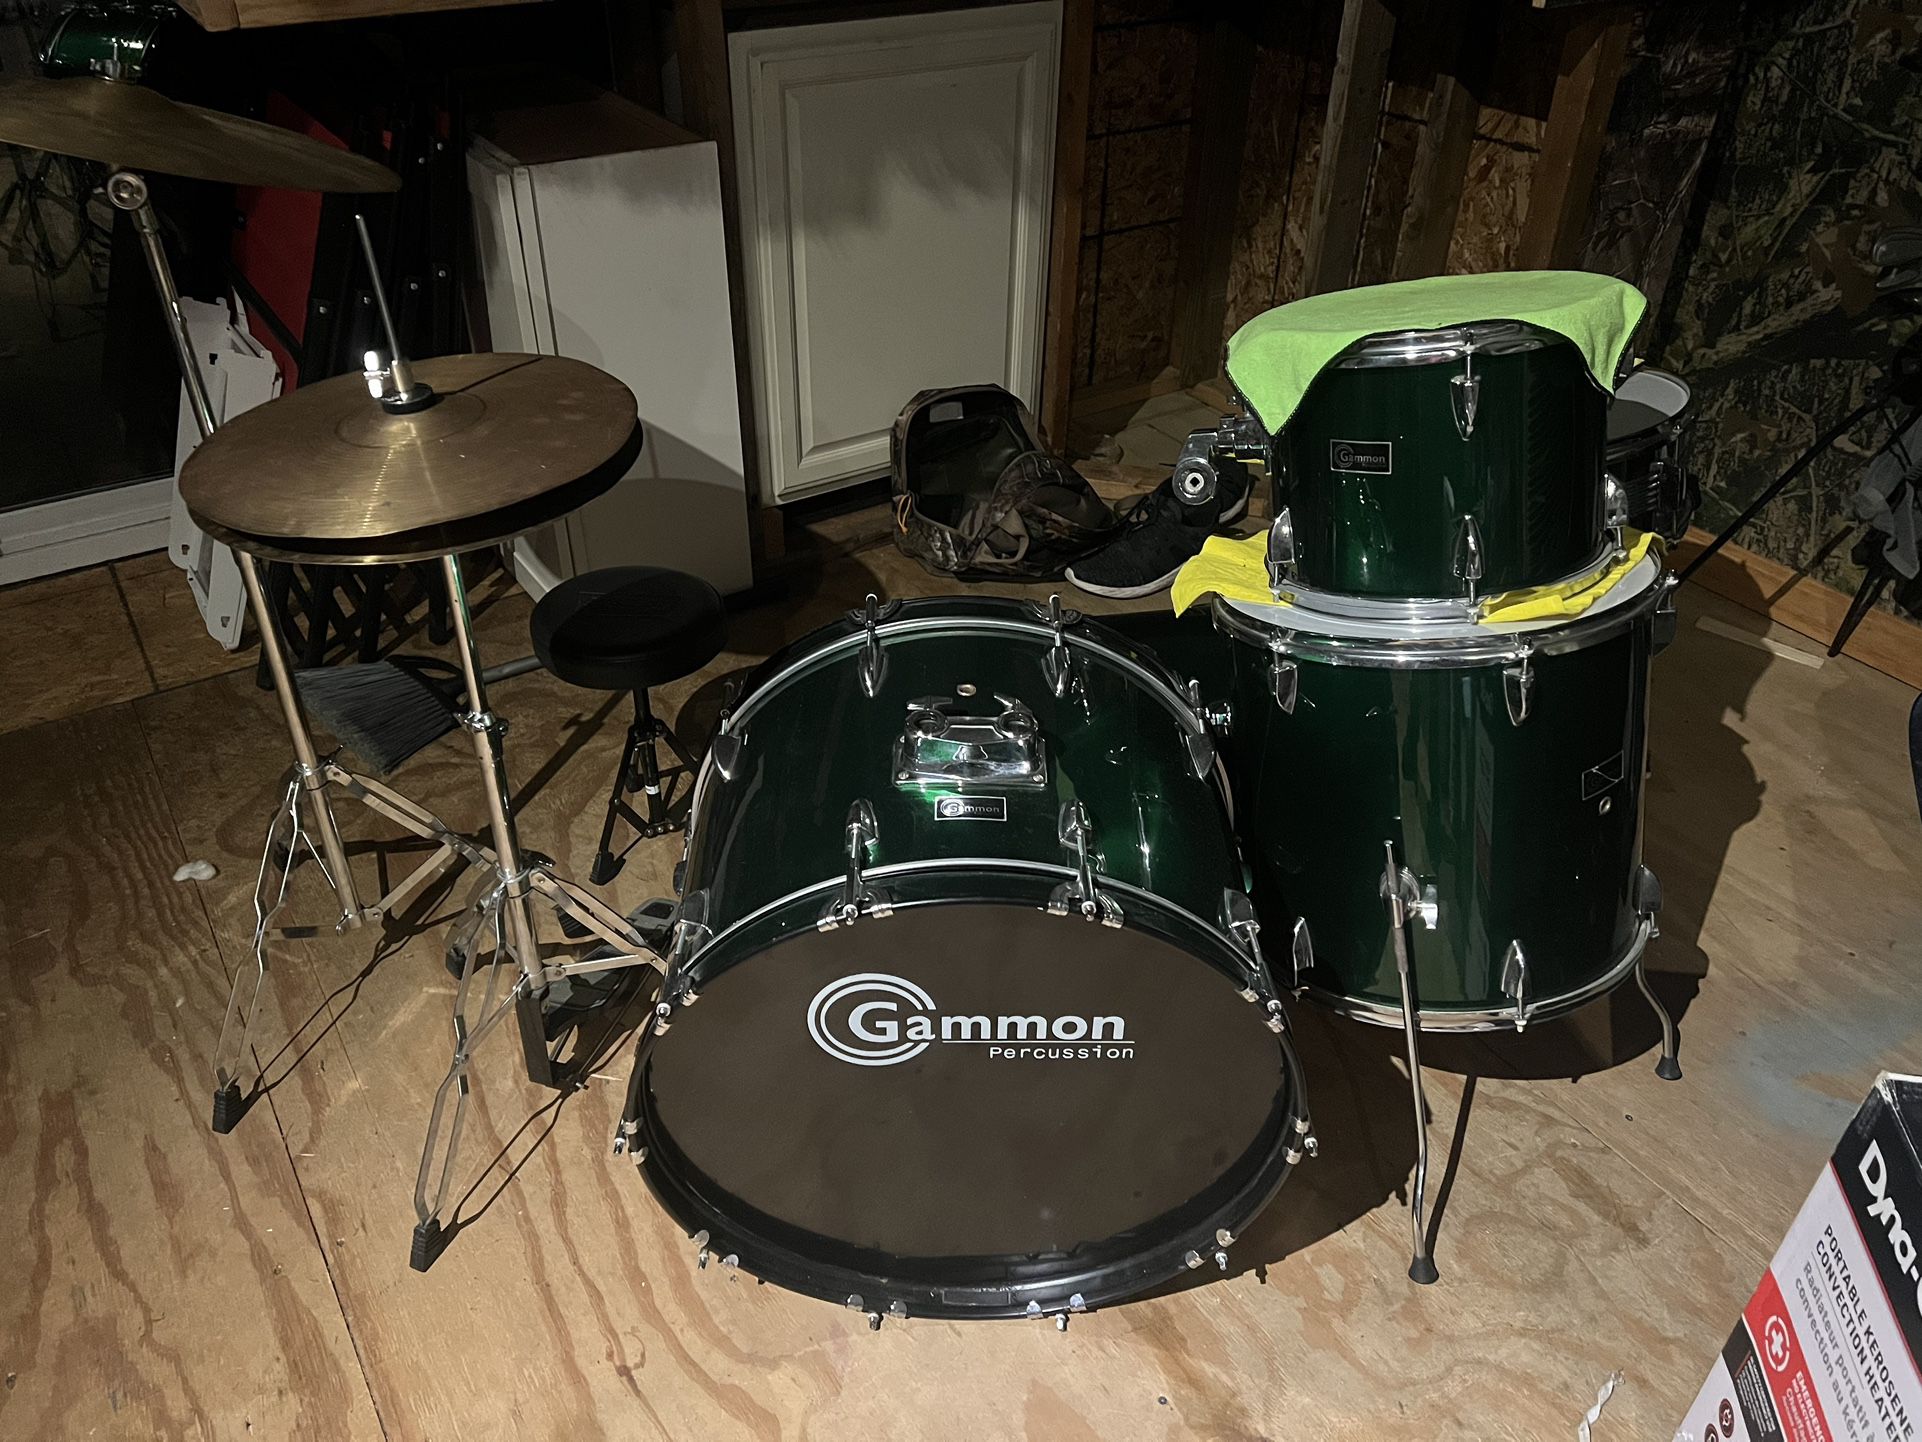 Gammon Drum set